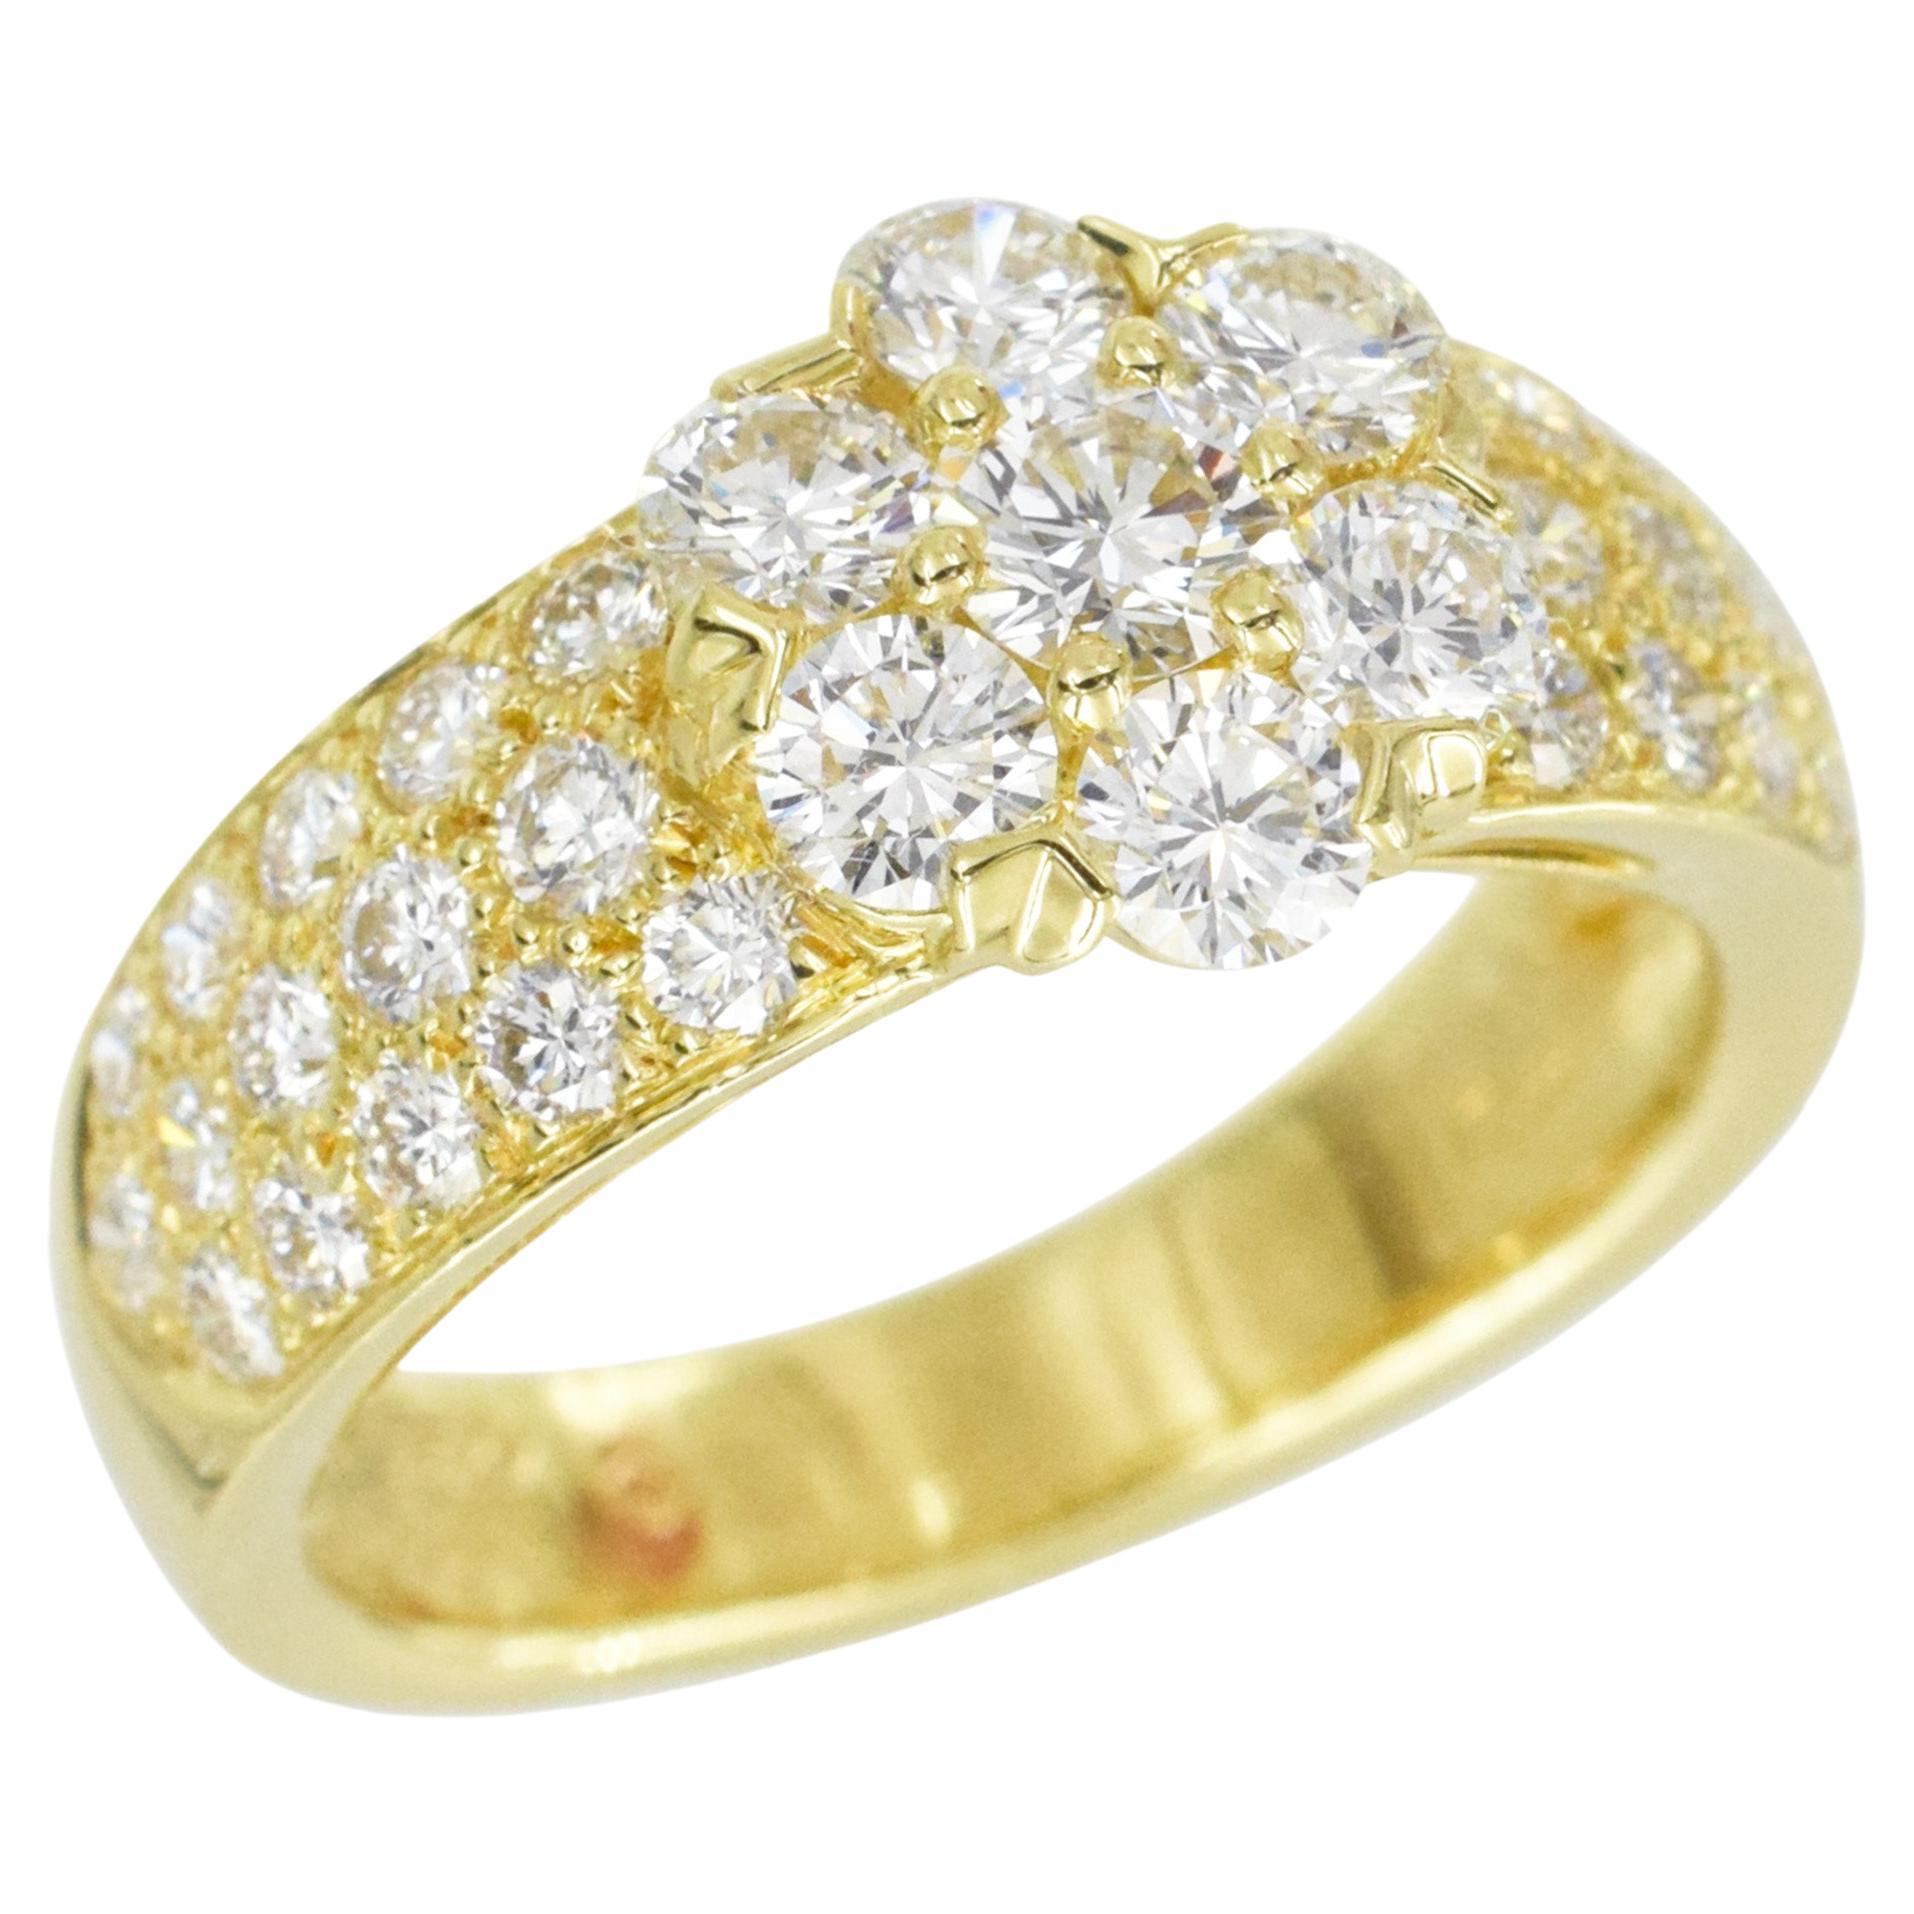 Van Cleef & Arpels "Fleurette" Diamond Ring